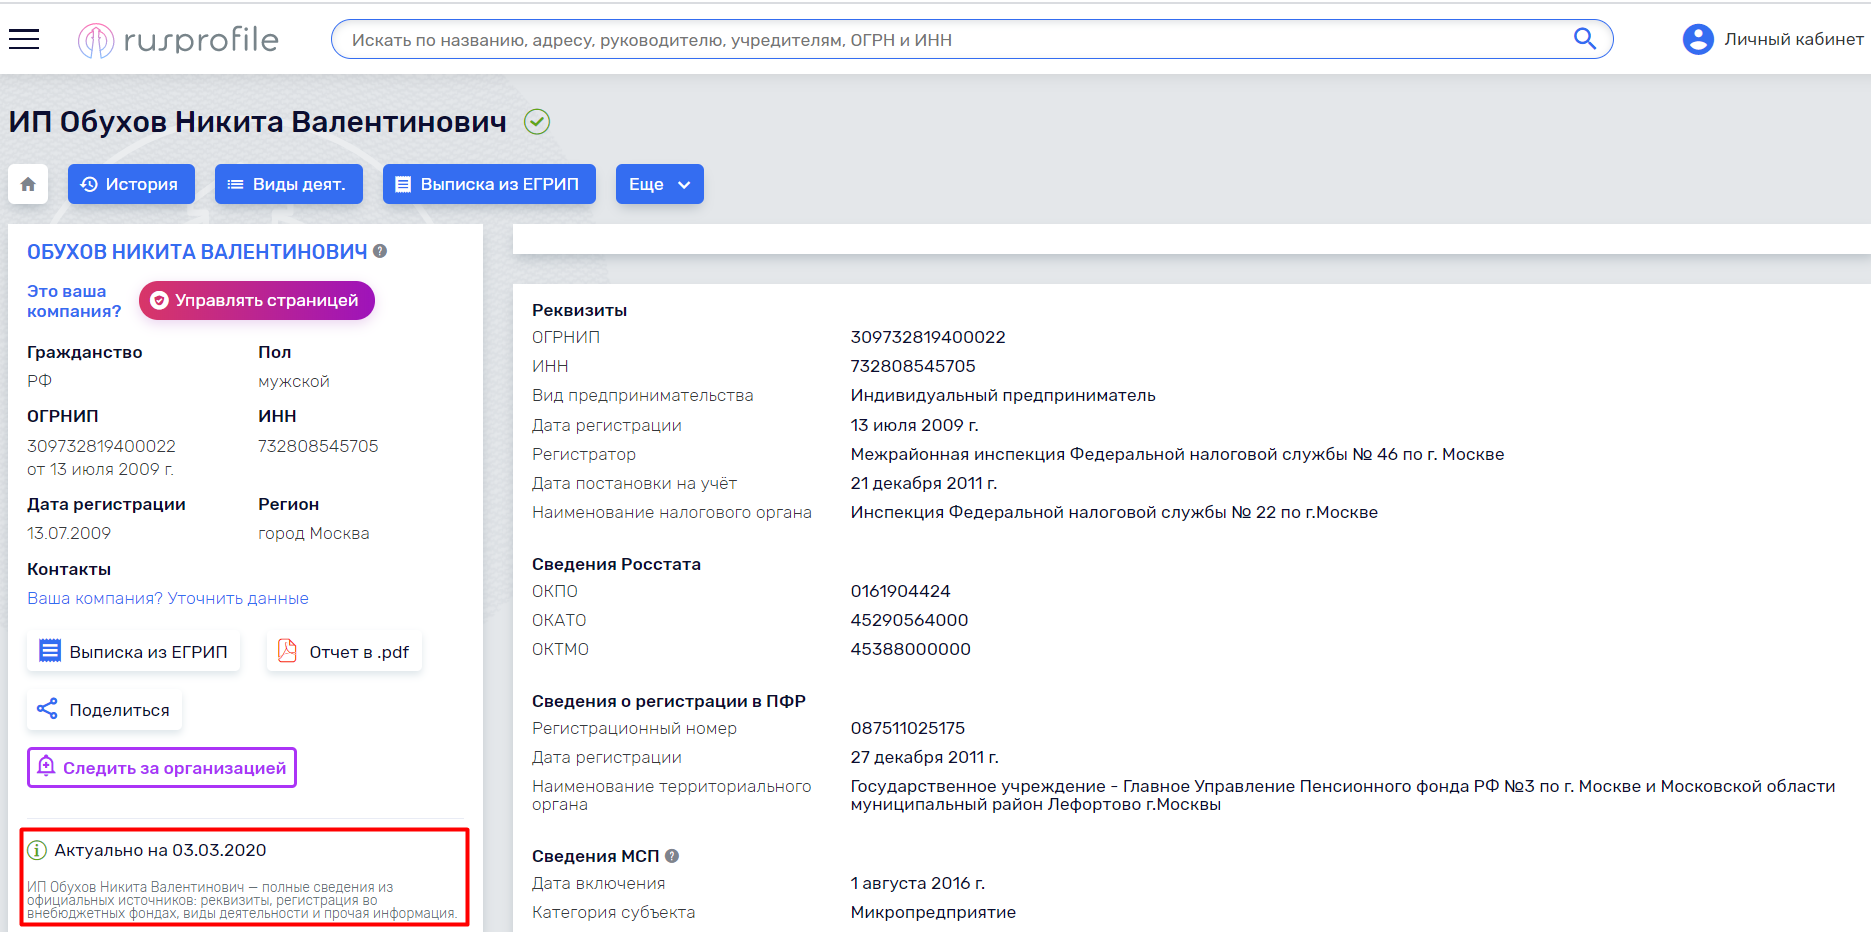 Уряд України запустив сайт про коронавіруc. Що з цим не так? - tech, community, news, country